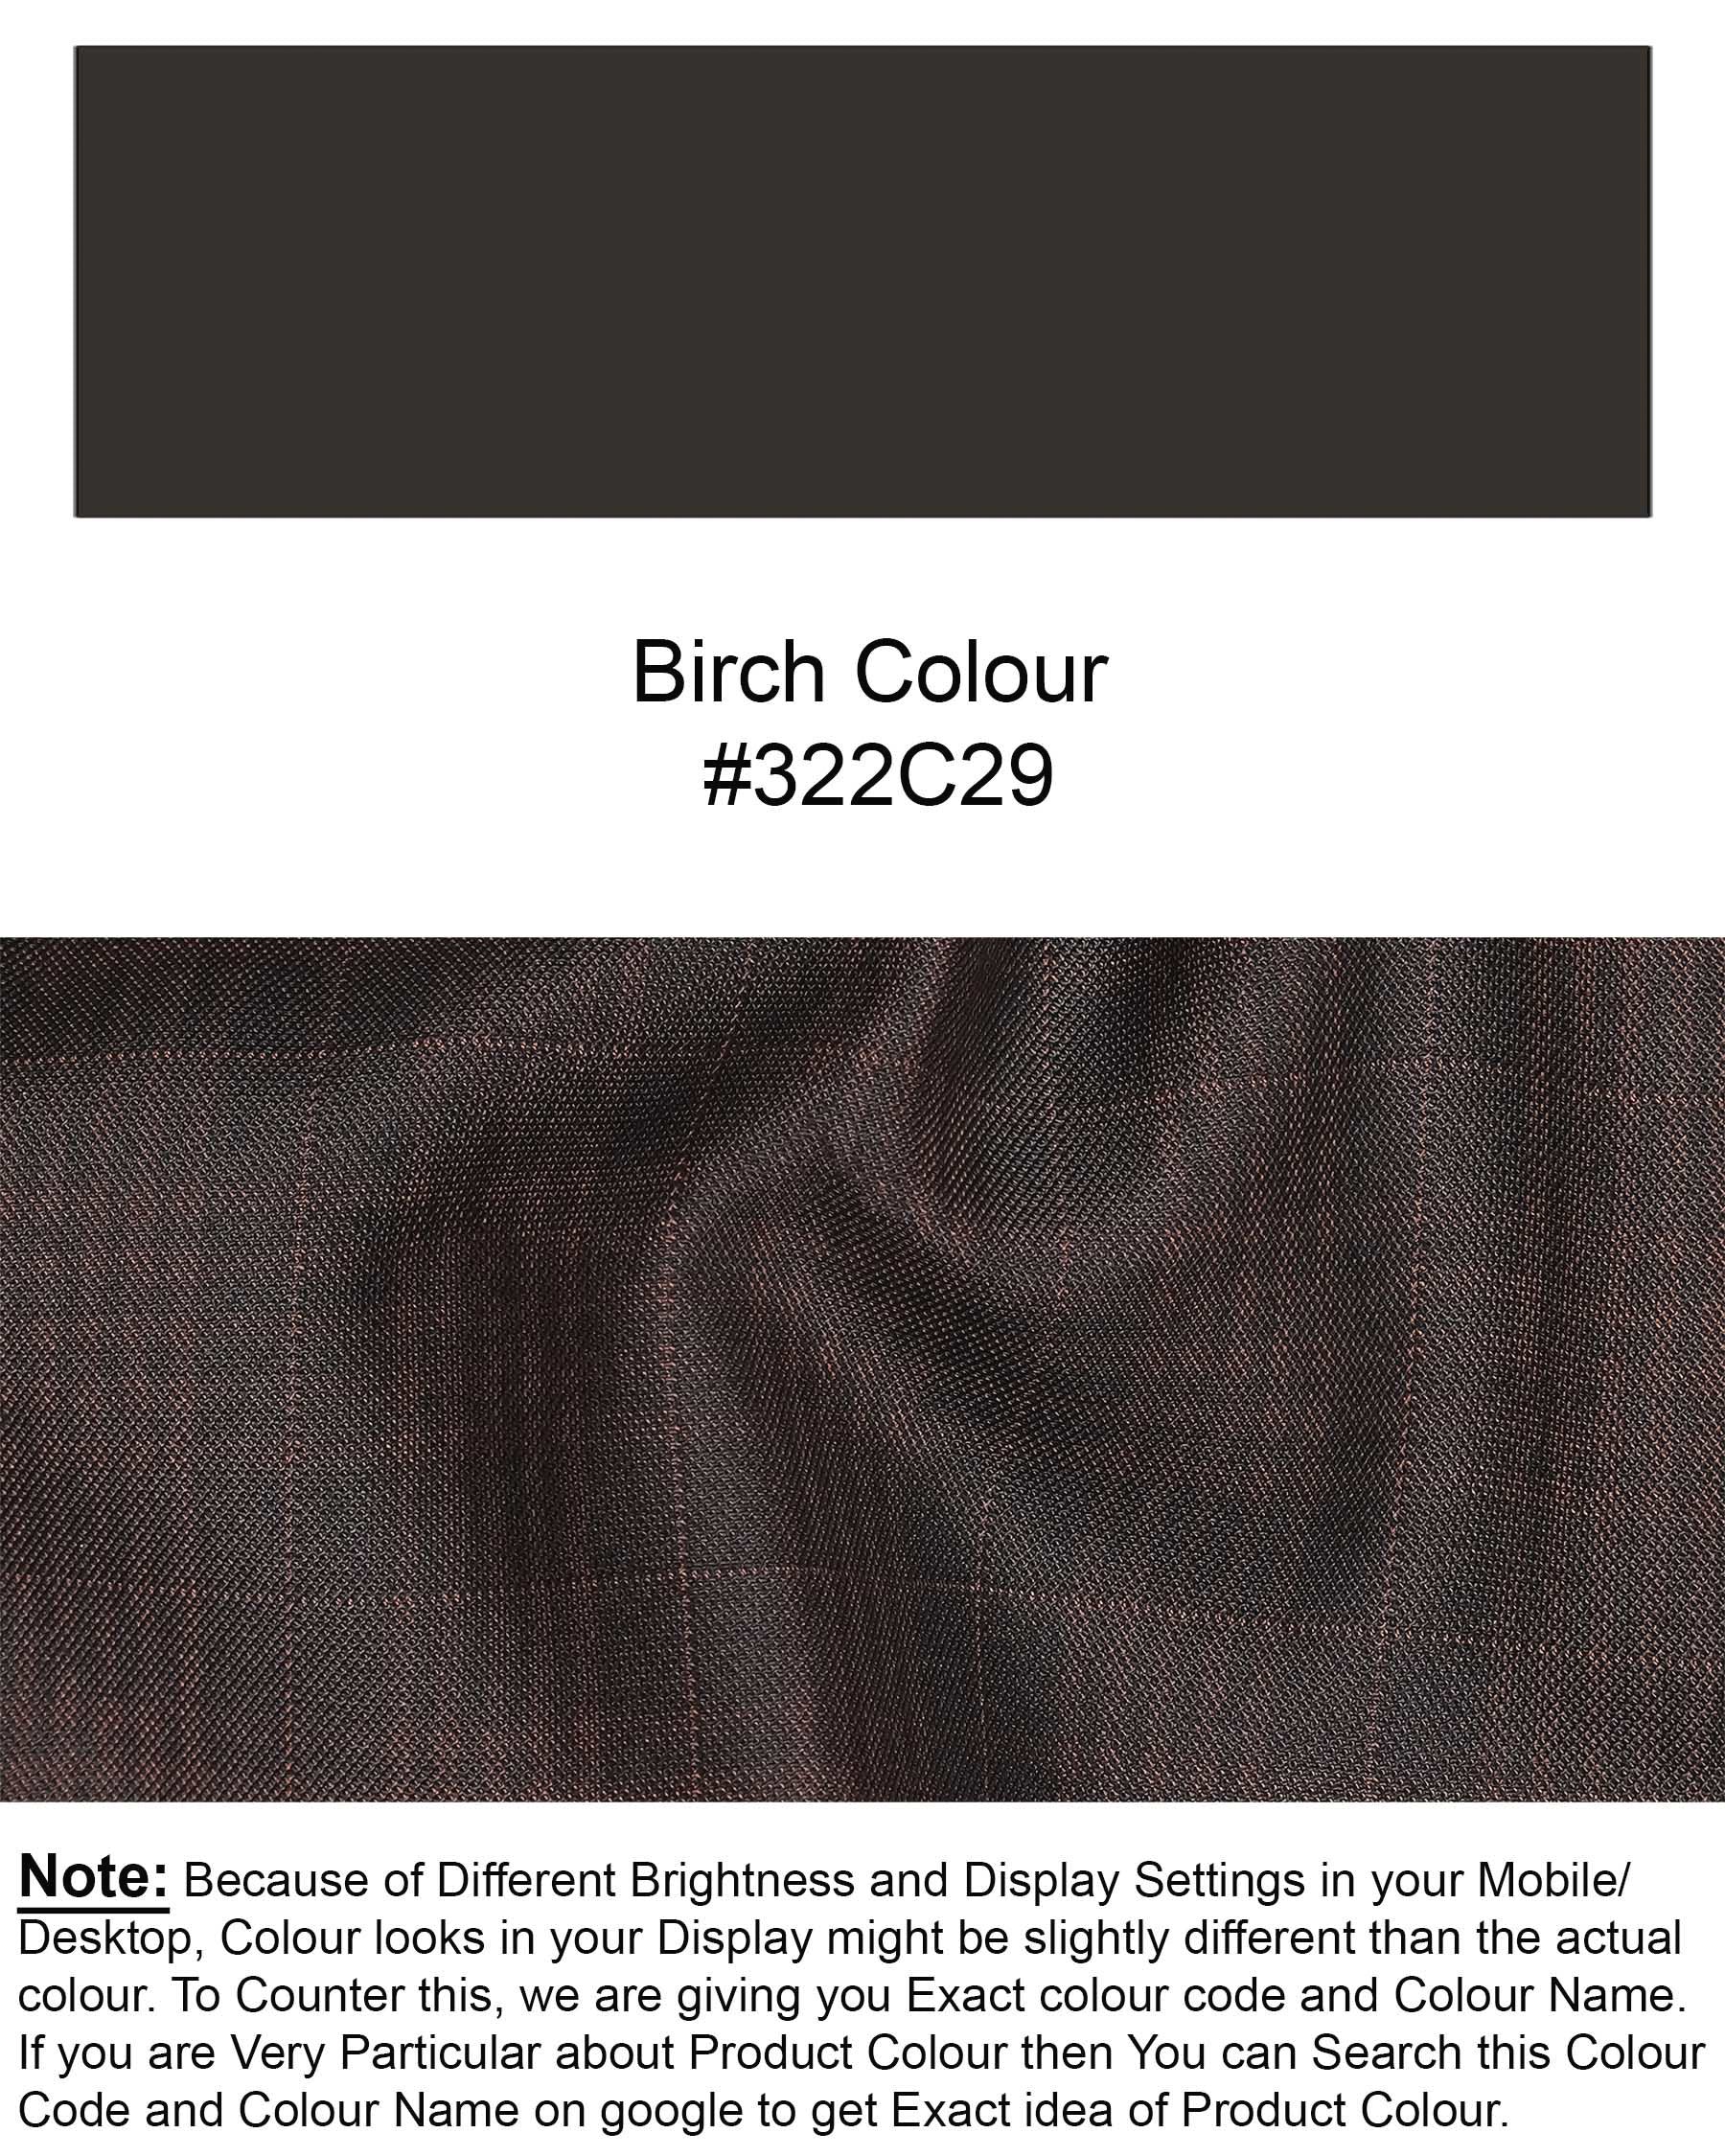 Birch Brown Plaid Pant T1955-28, T1955-30, T1955-32, T1955-34, T1955-36, T1955-38, T1955-40, T1955-42, T1955-44